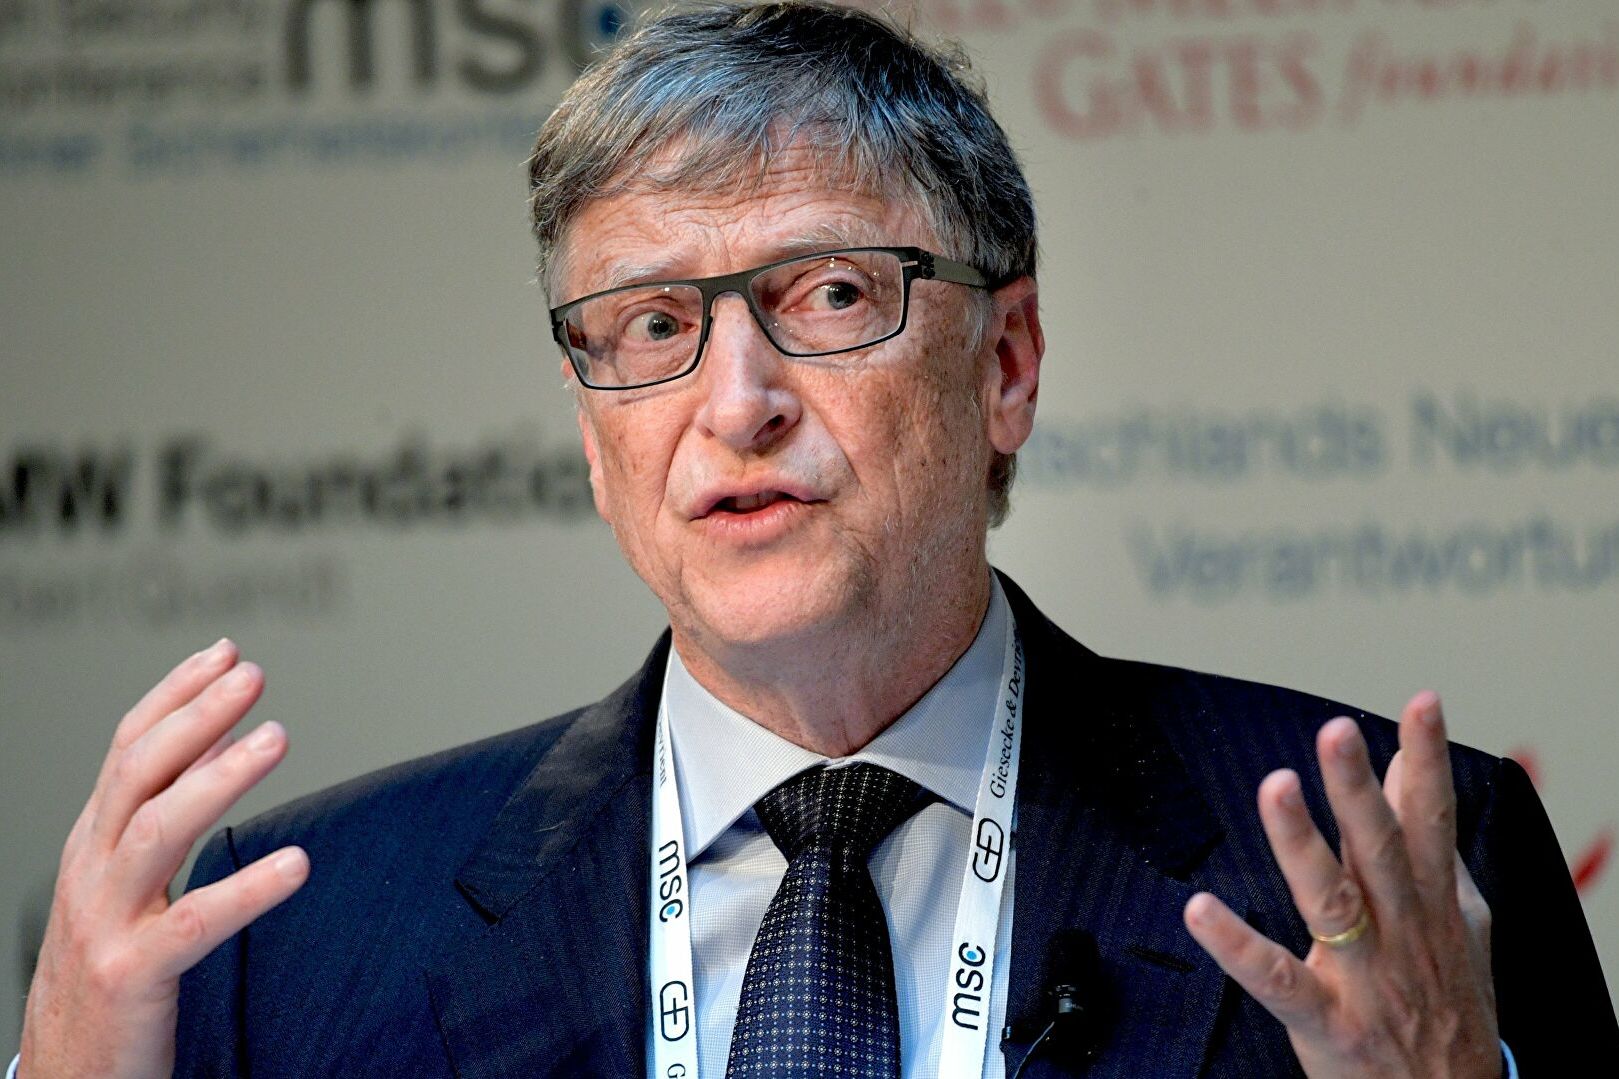 Локдаунов можно было бы избежать: Билл Гейтс утверждает, что был допущен ряд фатальных ошибок еще в начале пандемии 